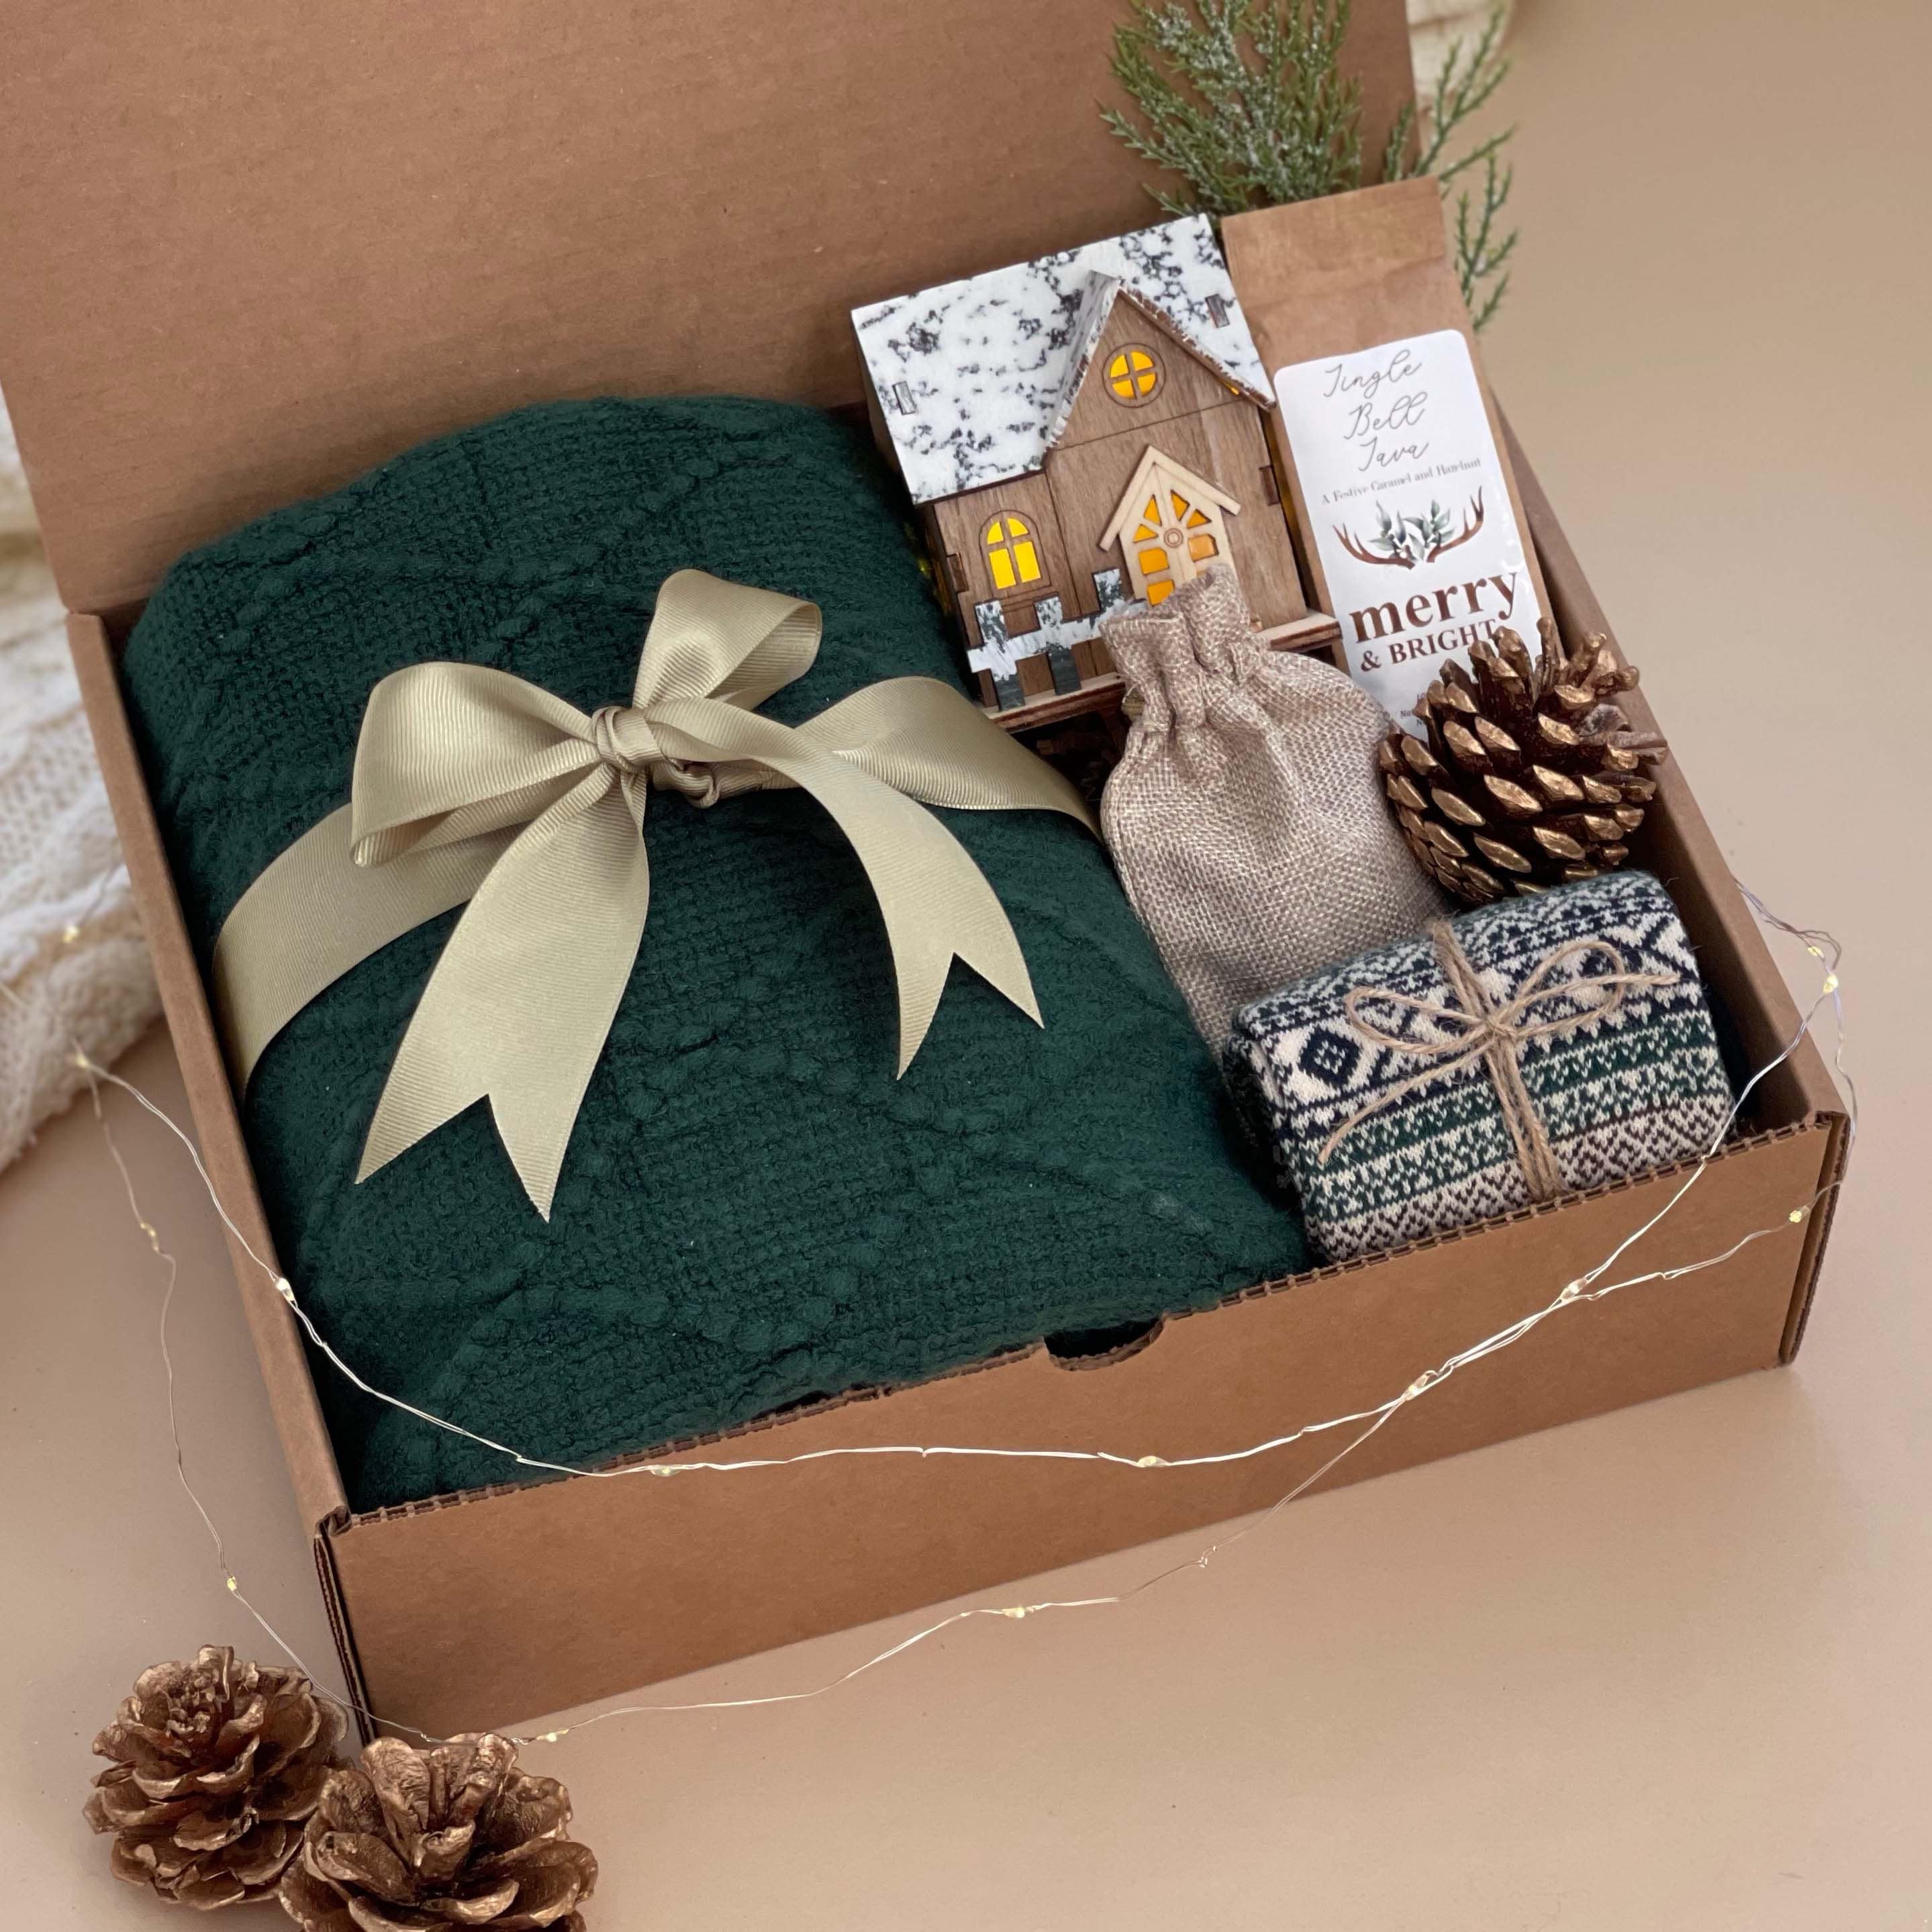 Printed Christmas Tin Gift Basket (Style May Vary) - Walmart.com